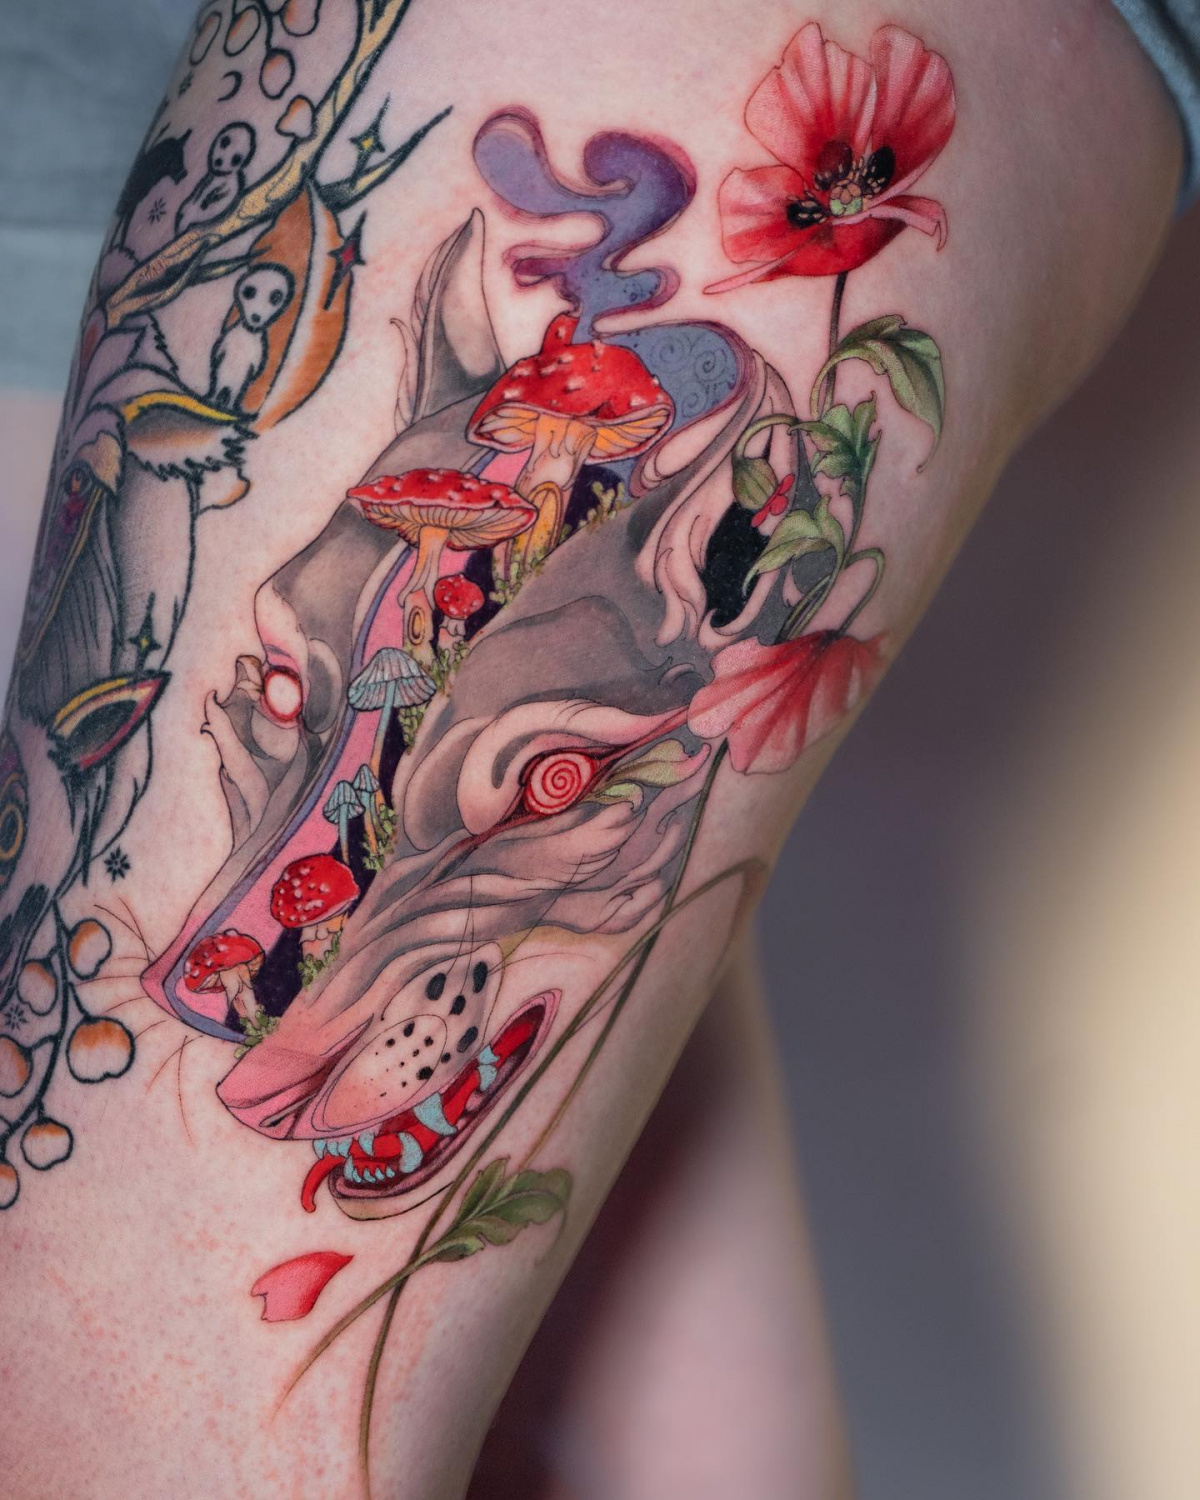 Tattoo artist Maiza Van Bommel